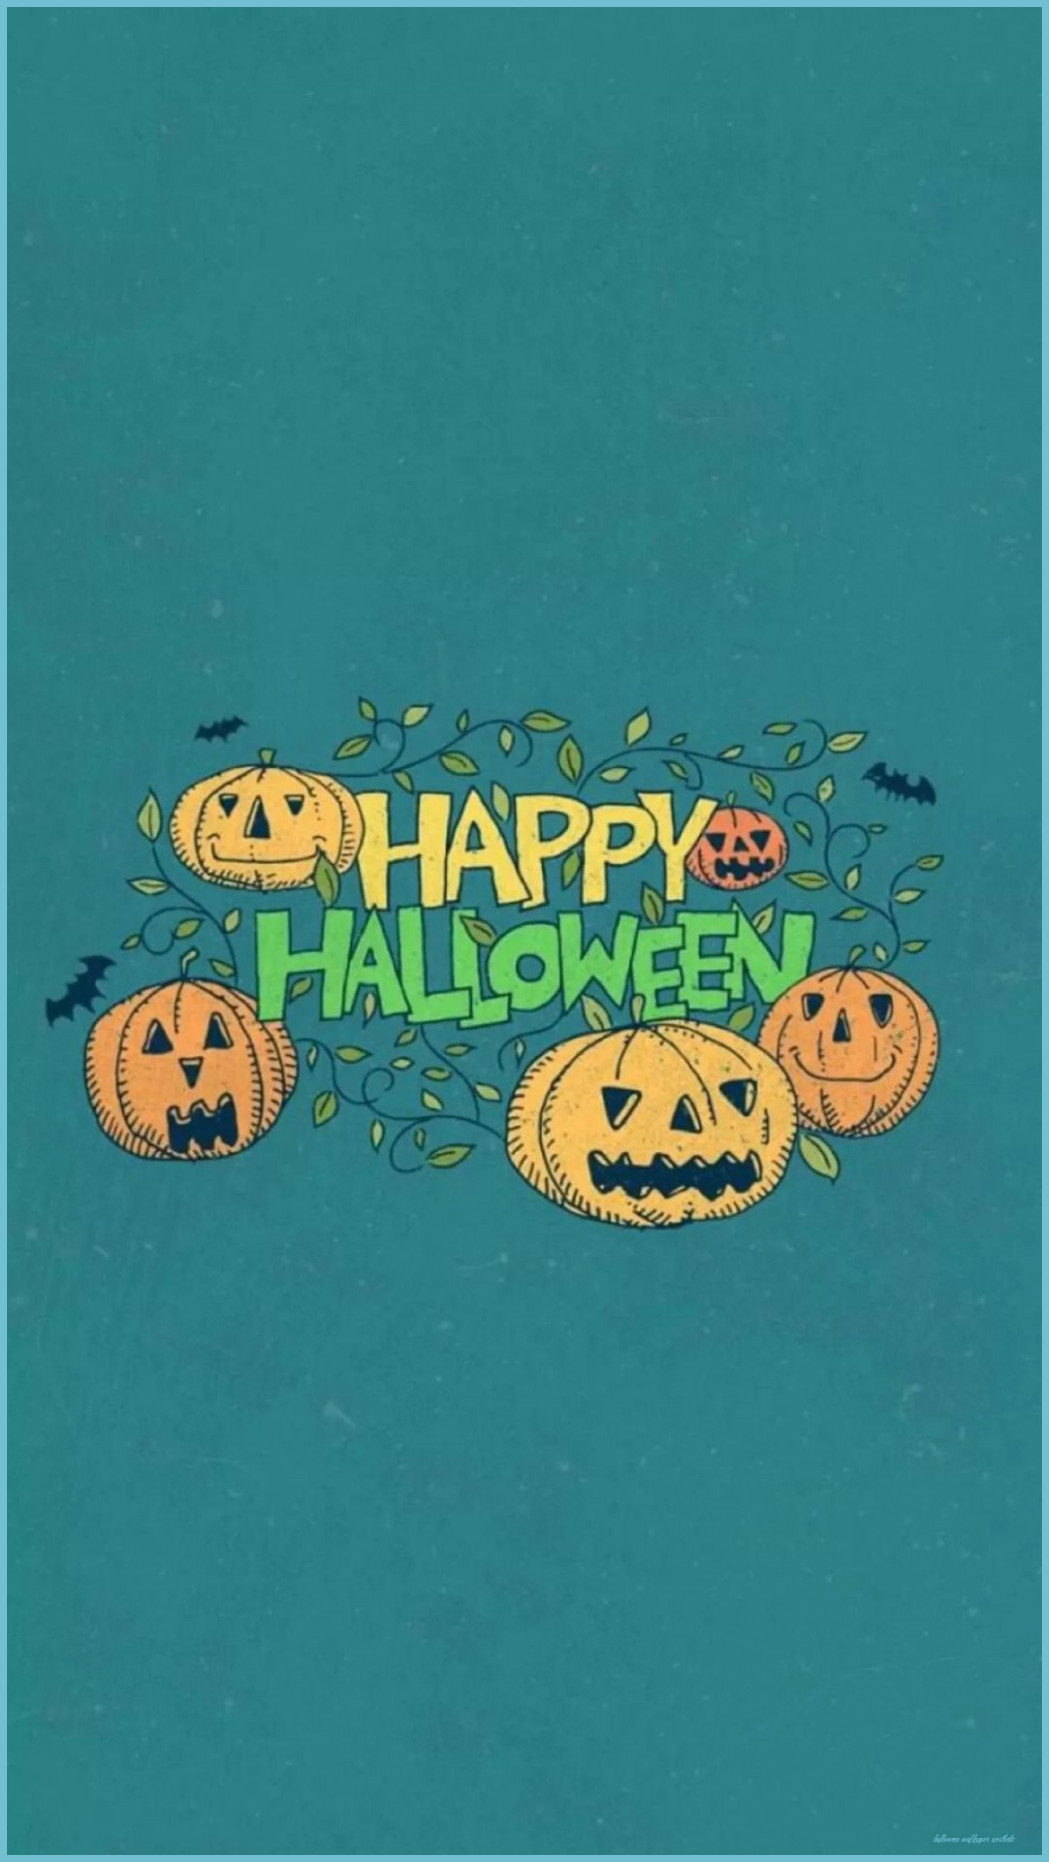 Happy Halloween Aesthetic Wallpaper Wallpaper Aesthetic